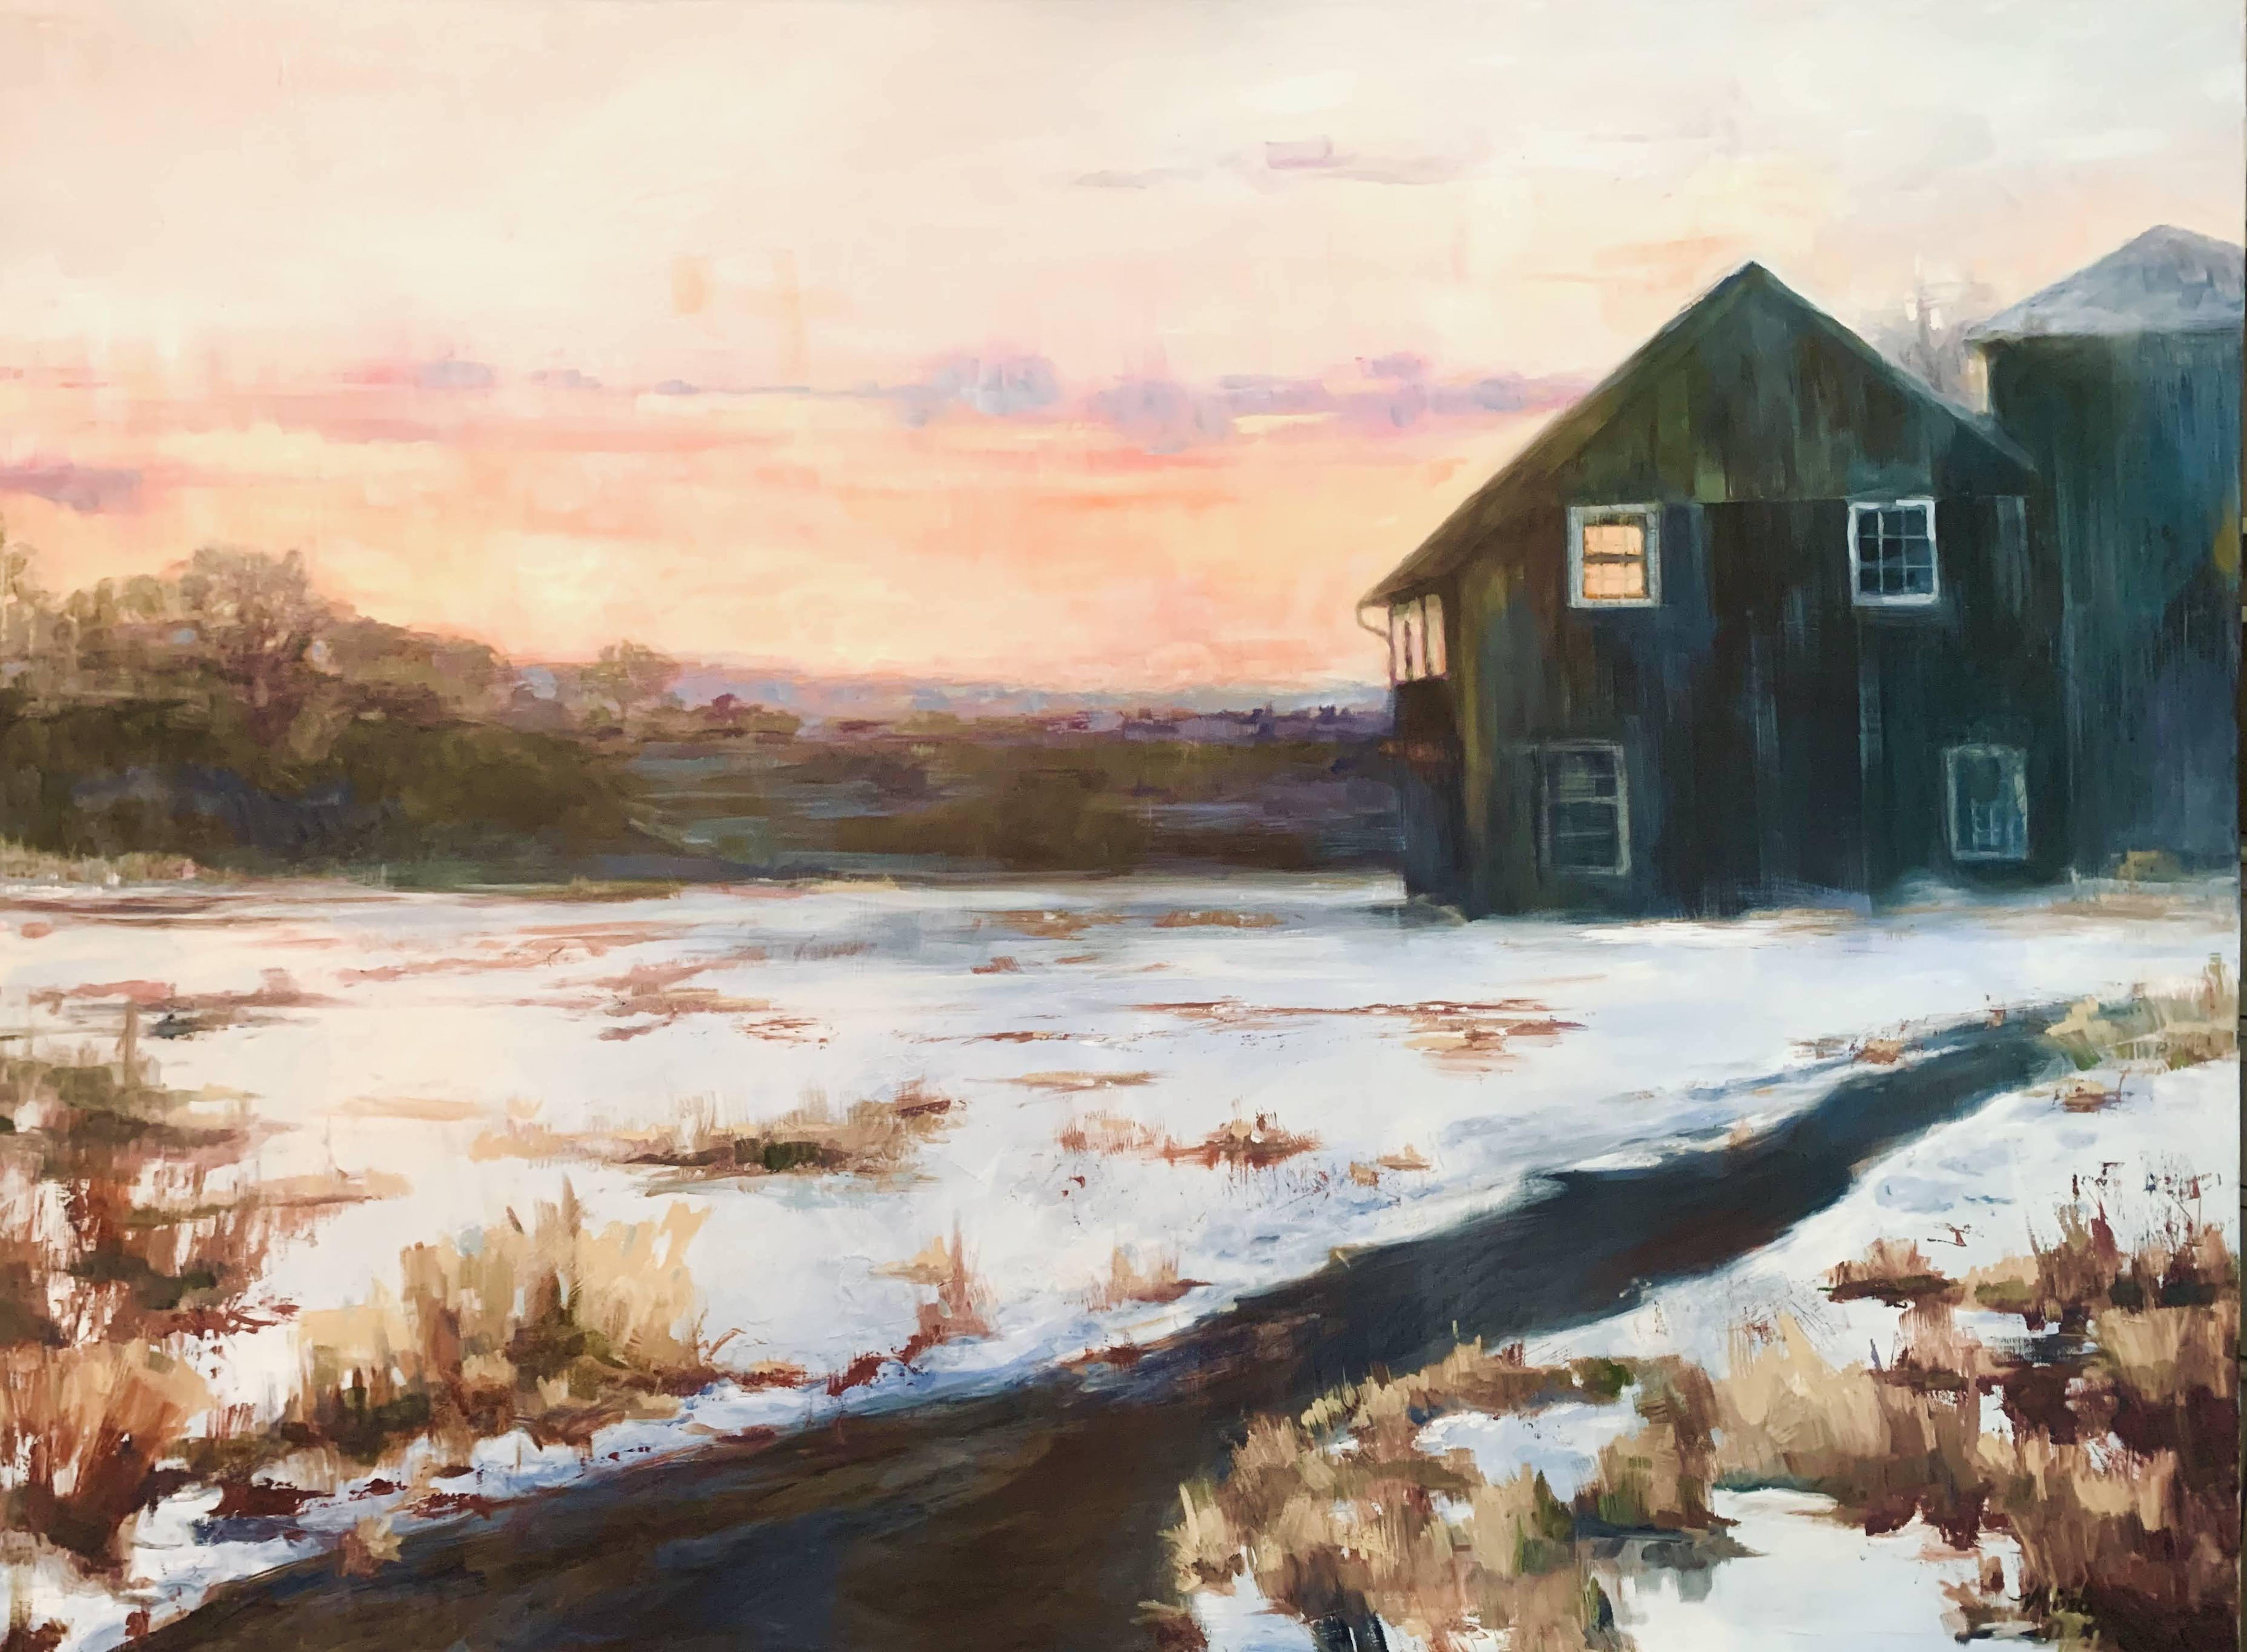 Mira  Vitarello Landscape Painting - Sunset Barn, Painting, Oil on Canvas